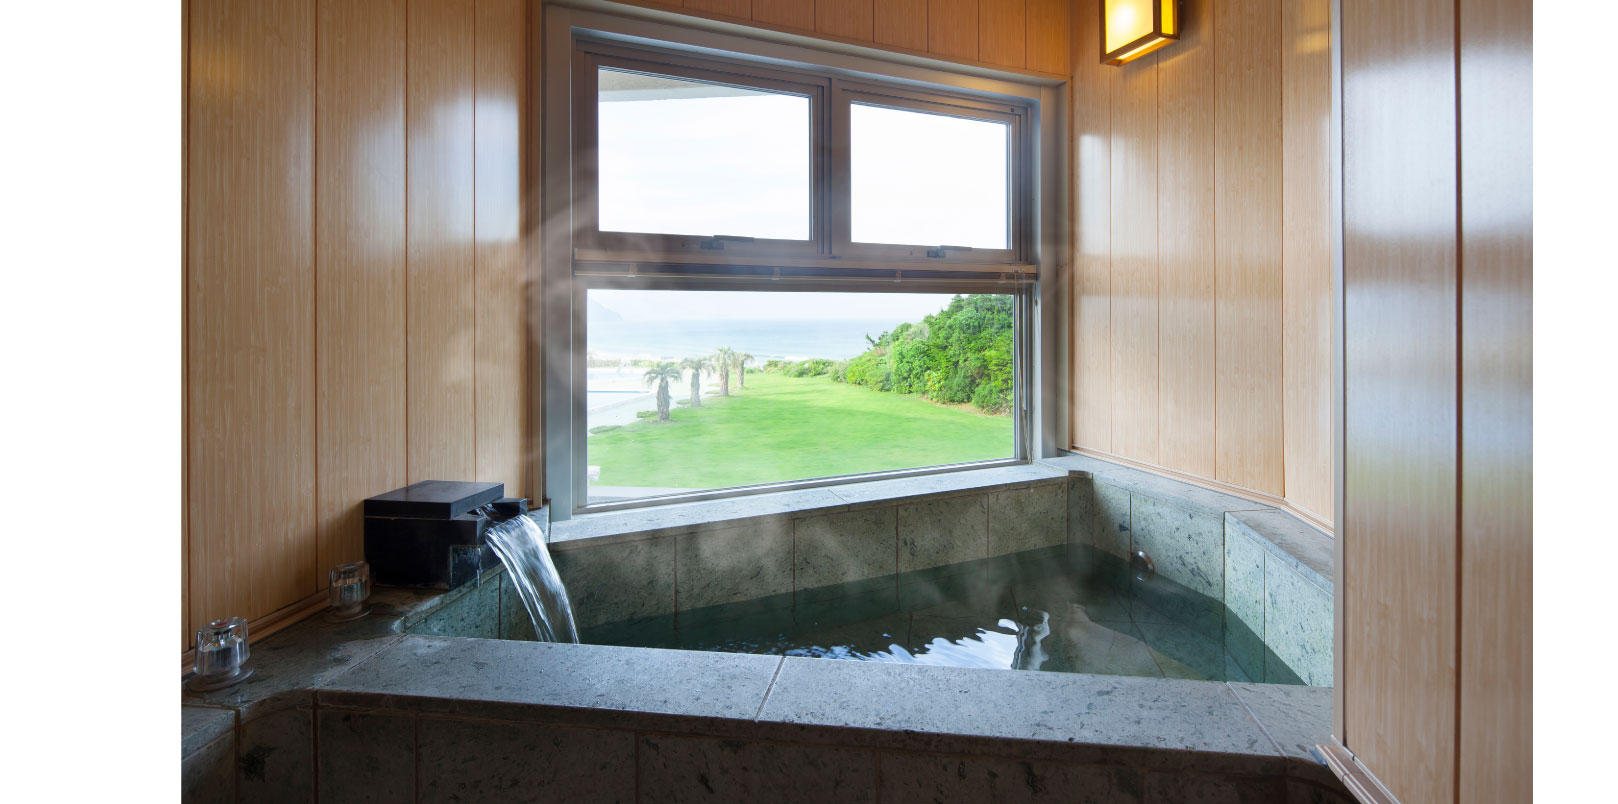 ホテル伊豆急の眺望風呂付き特別室の個室風呂